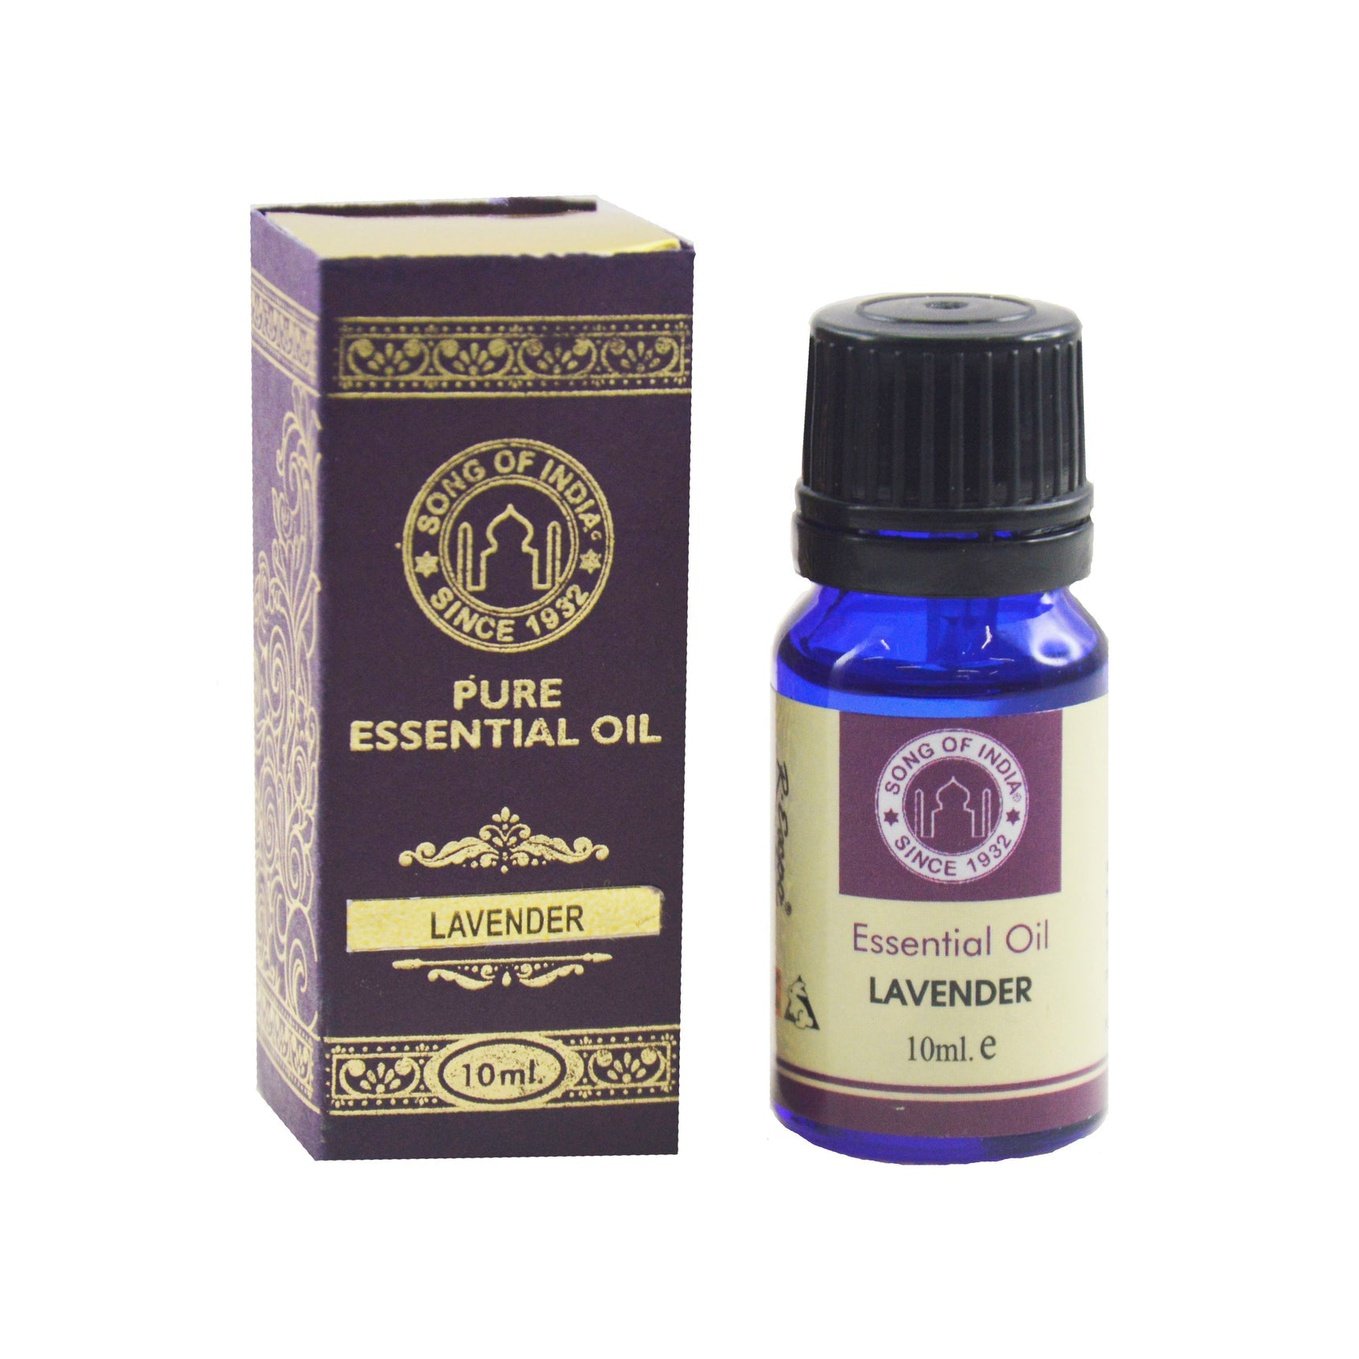 Essential Oils Lavendar ml